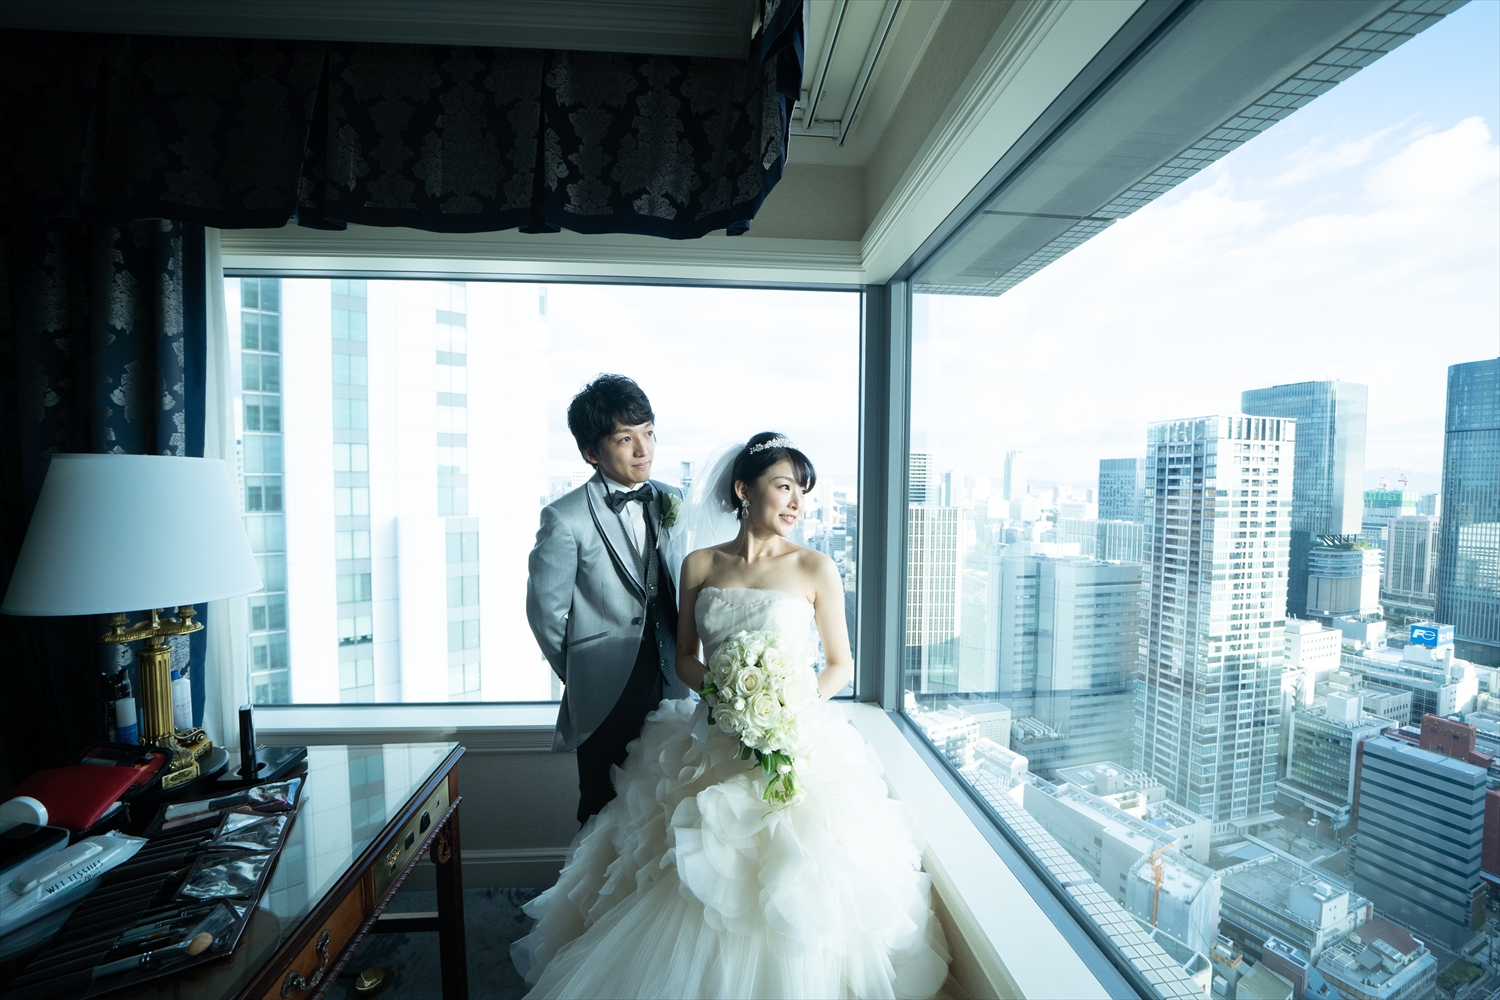 リッツカールトン大阪での結婚式写真撮影 結婚式ビデオ撮影 写真撮影なら月山映像へ 大阪 神戸 京都